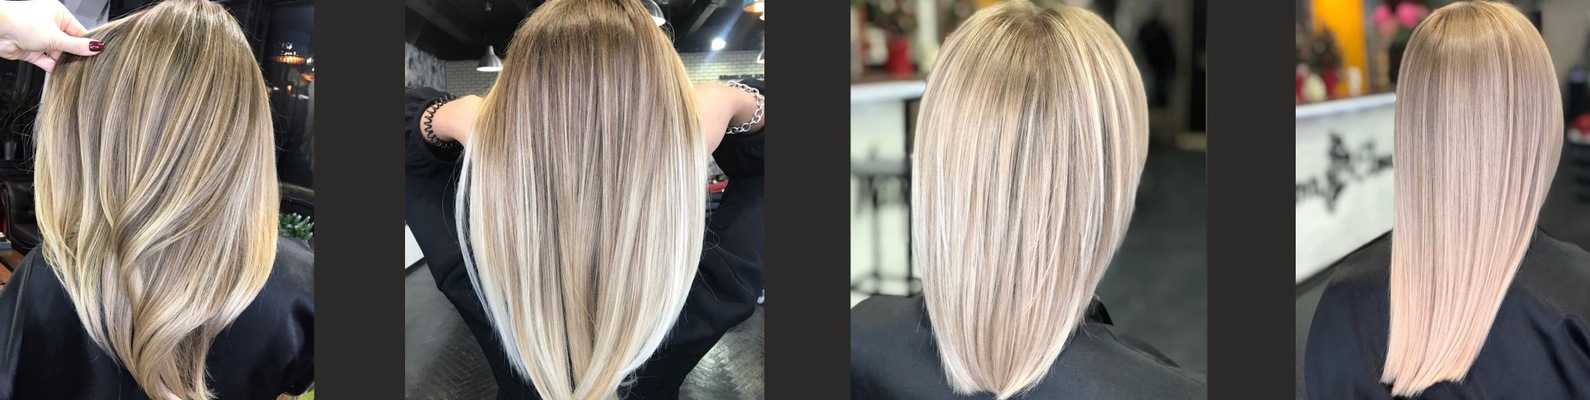 Окрашивание волос airtouh 2022: что это такое, на темные волосы, на светлые волосы, техника окрашивания, фото до и после